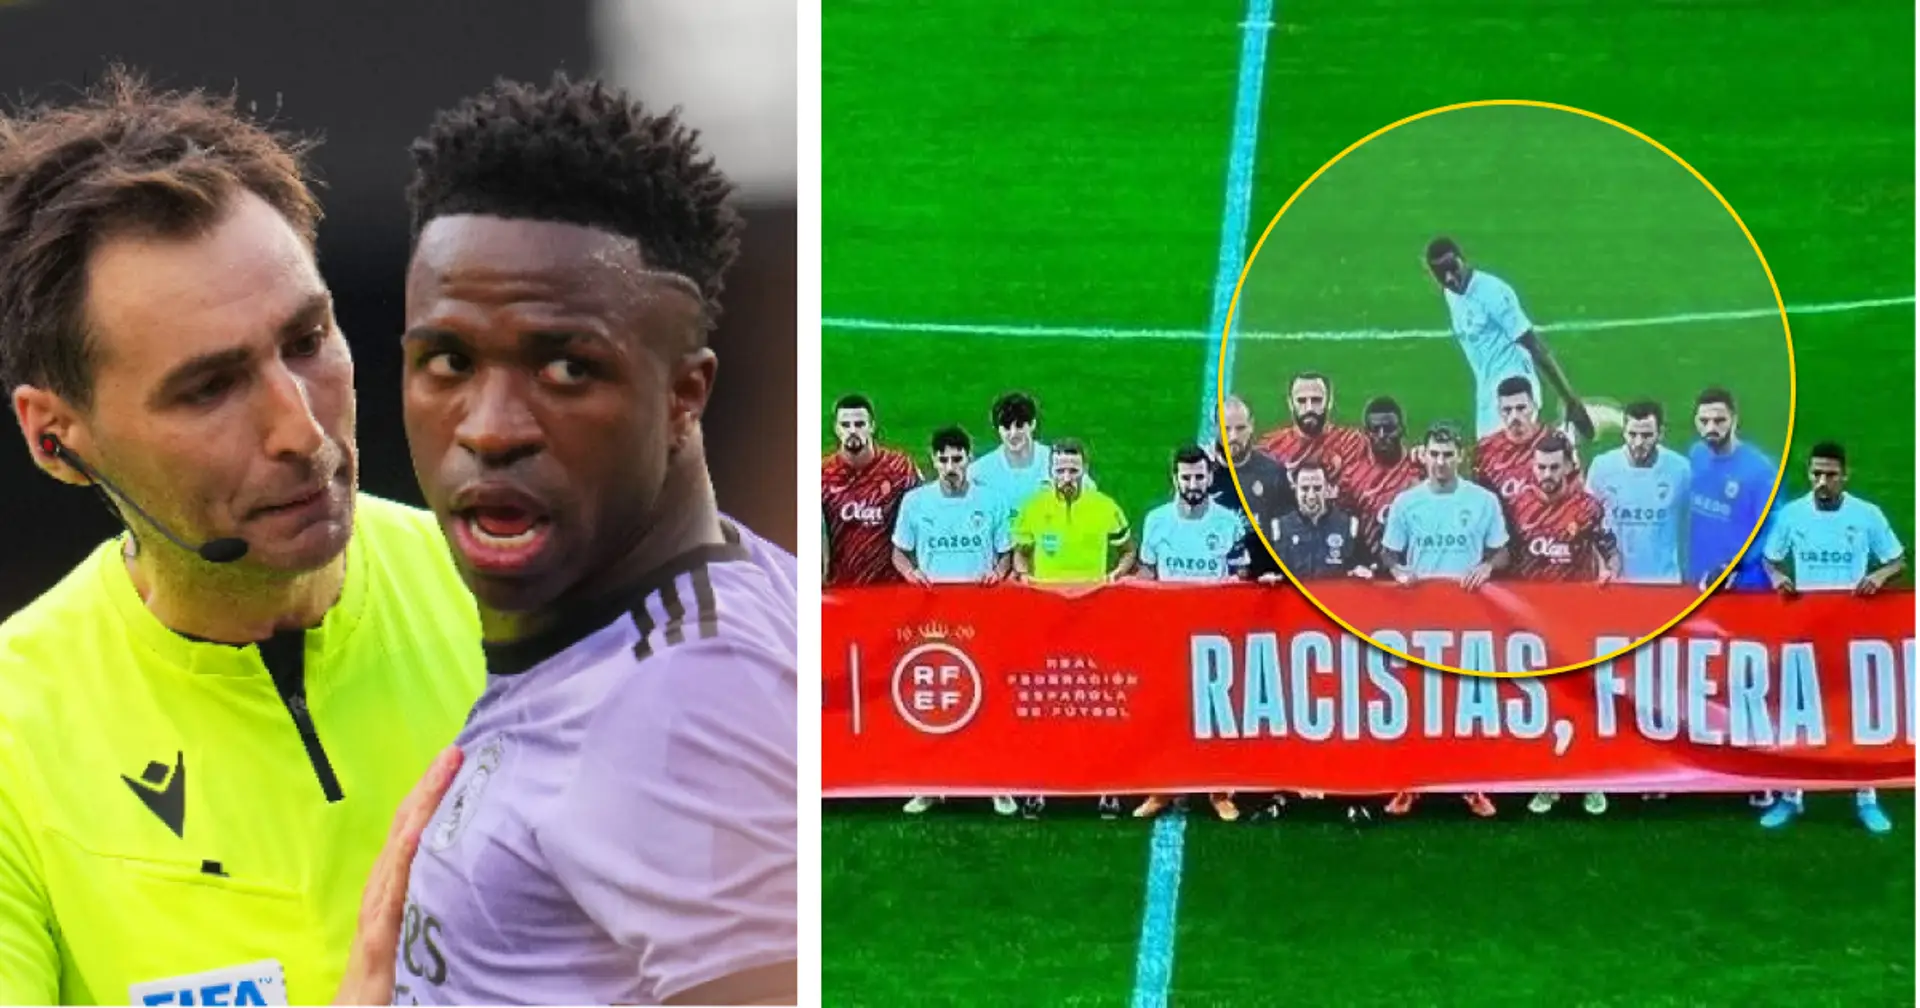 El jugador del Valencia Mouctar Diakhaby se niega a sostener una pancarta contra el racismo como señal de protesta a La Liga